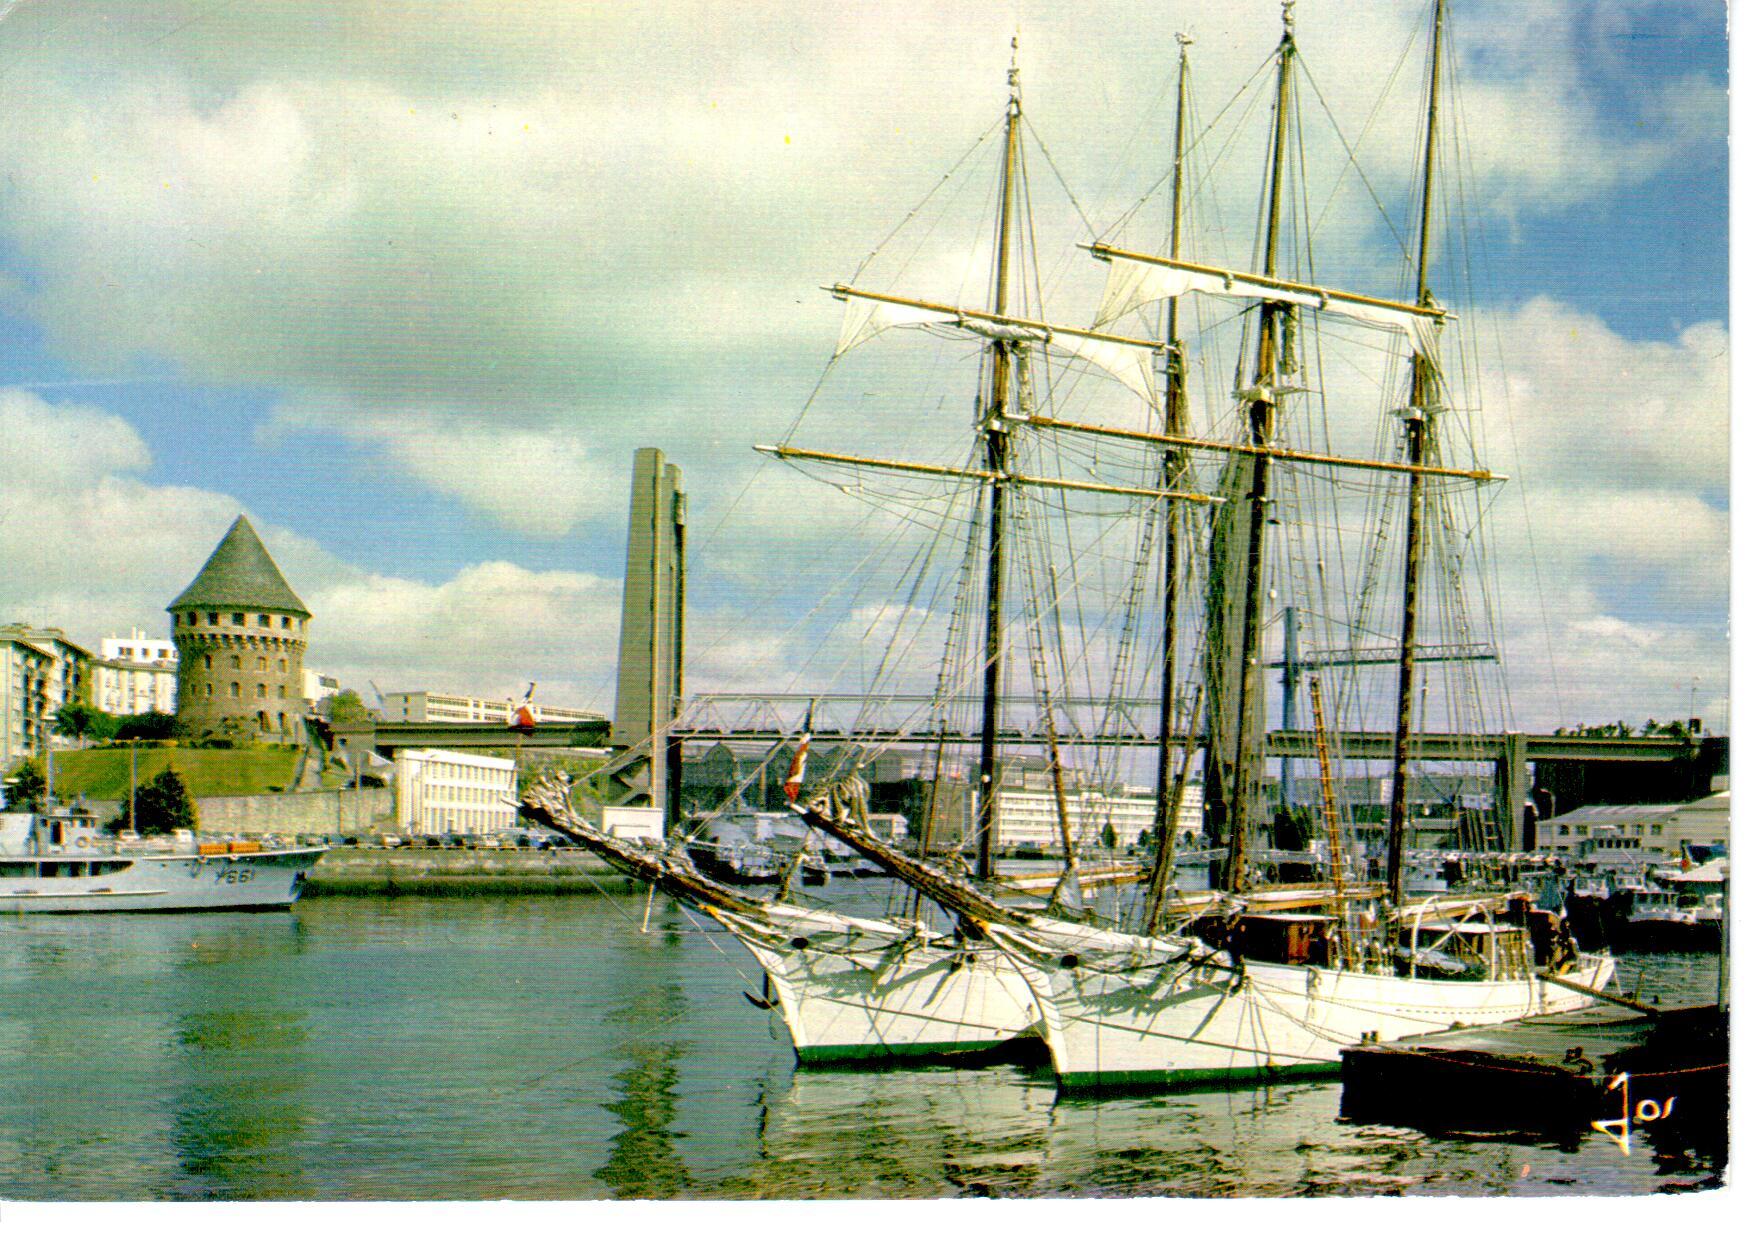 Brest L\'Etoile et la Belle Poule  quai sur les rives de la Penfeld